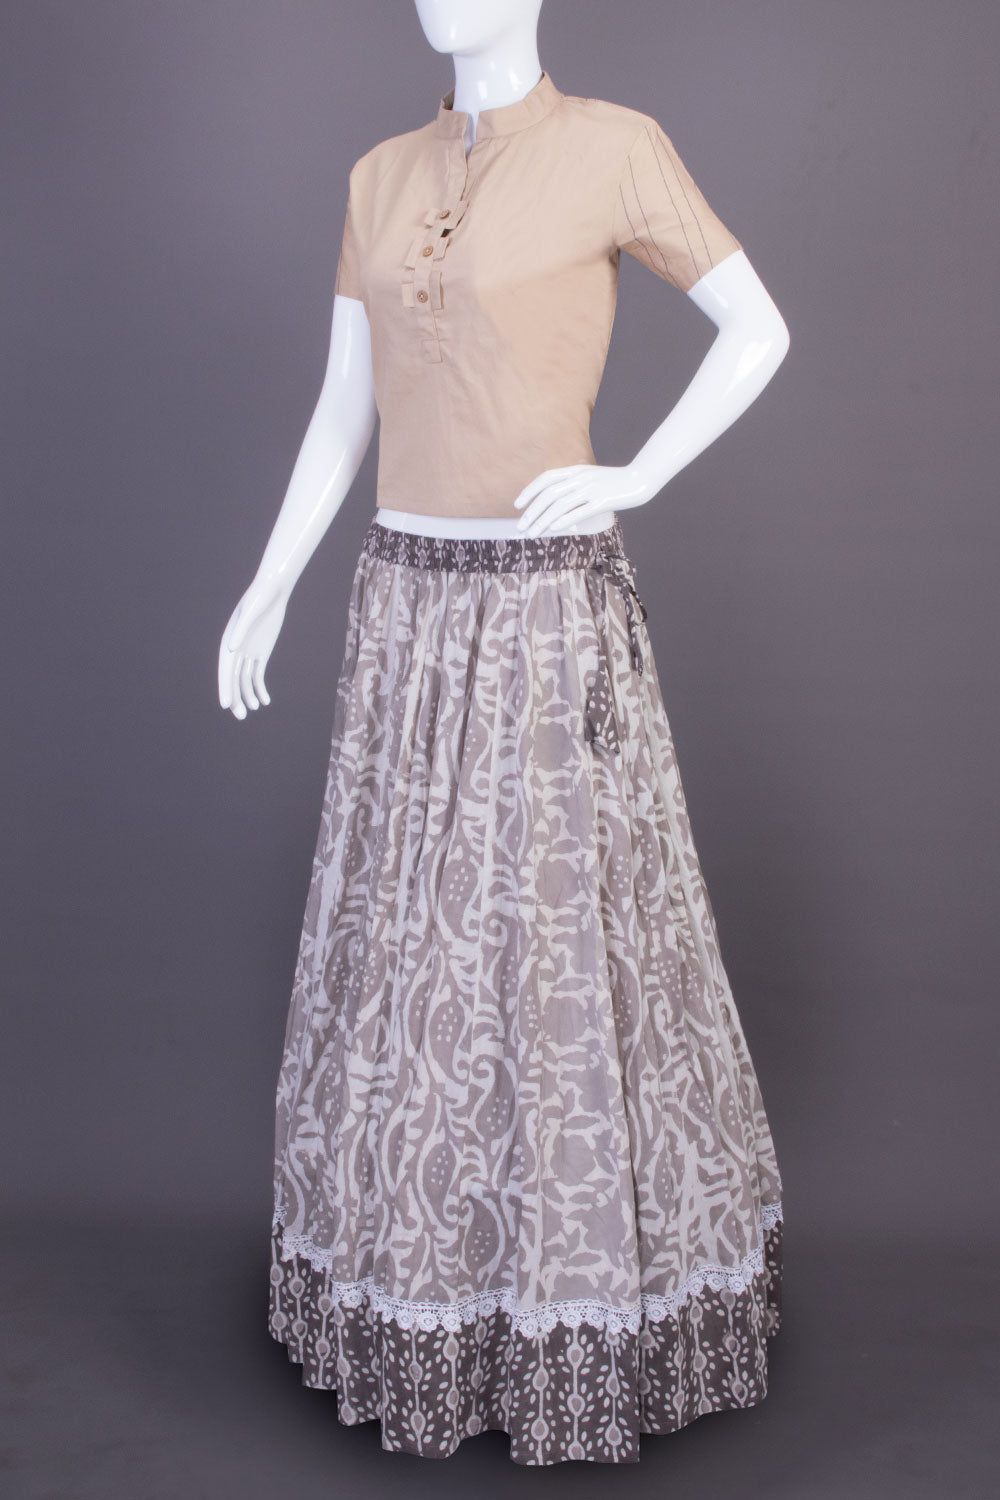 Off White Hand Block Printed Cotton Skirt (Size-36 to 40)-Avishya